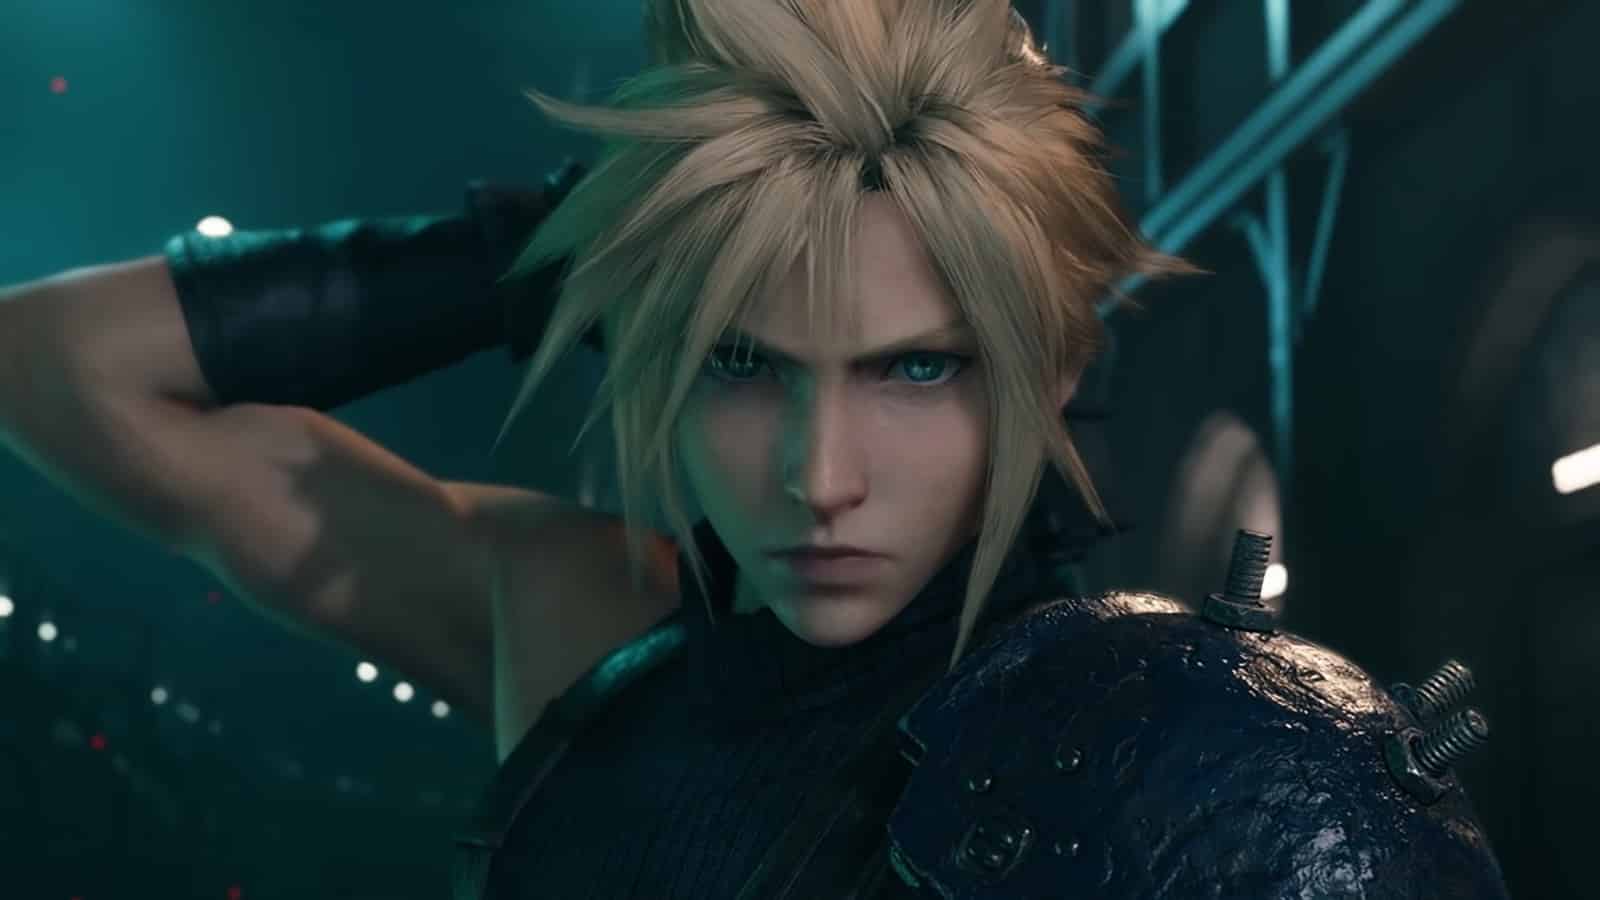 Promoção na Steam Oferece Final Fantasy VII Remake Intergrade